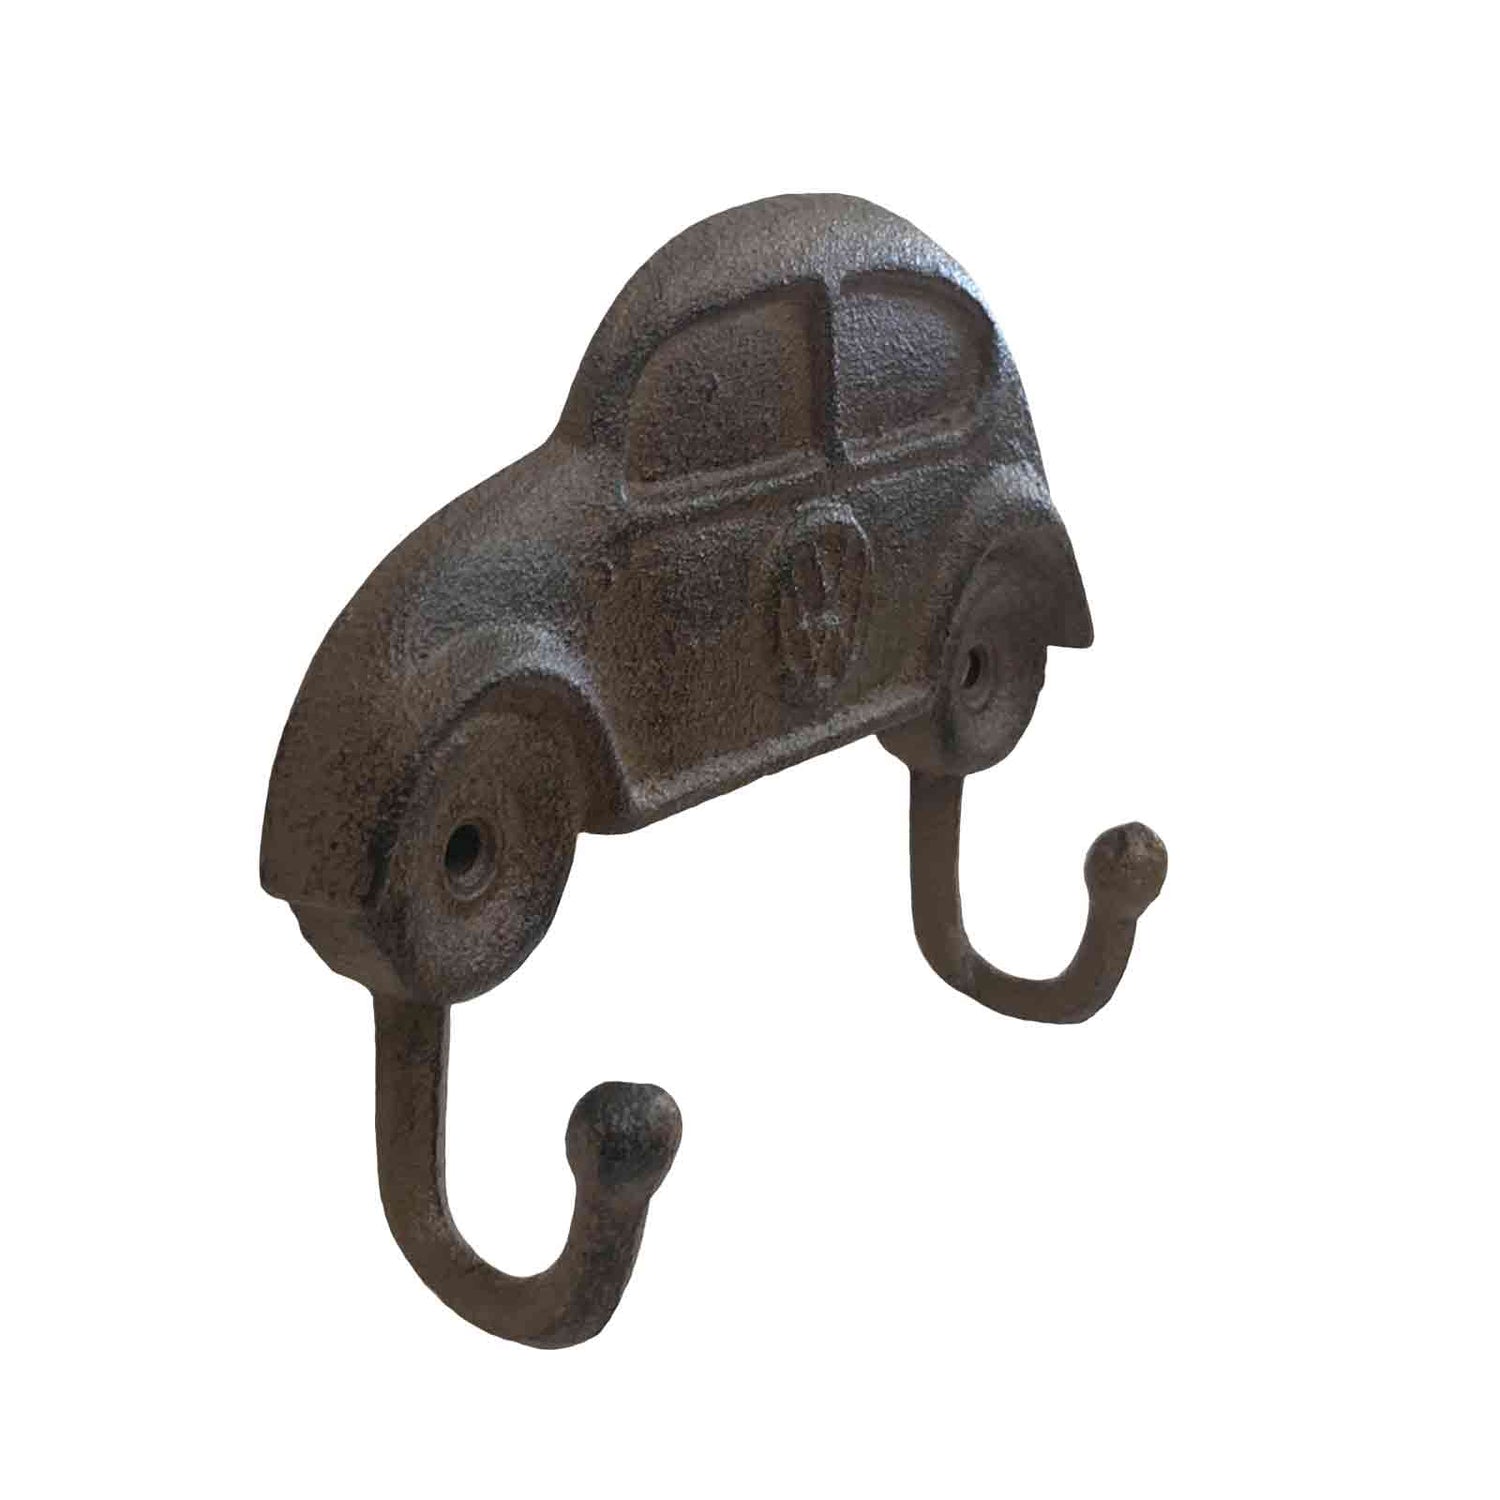 Volkswagen - VW Beetle Cast Iron Metal Wall Hook